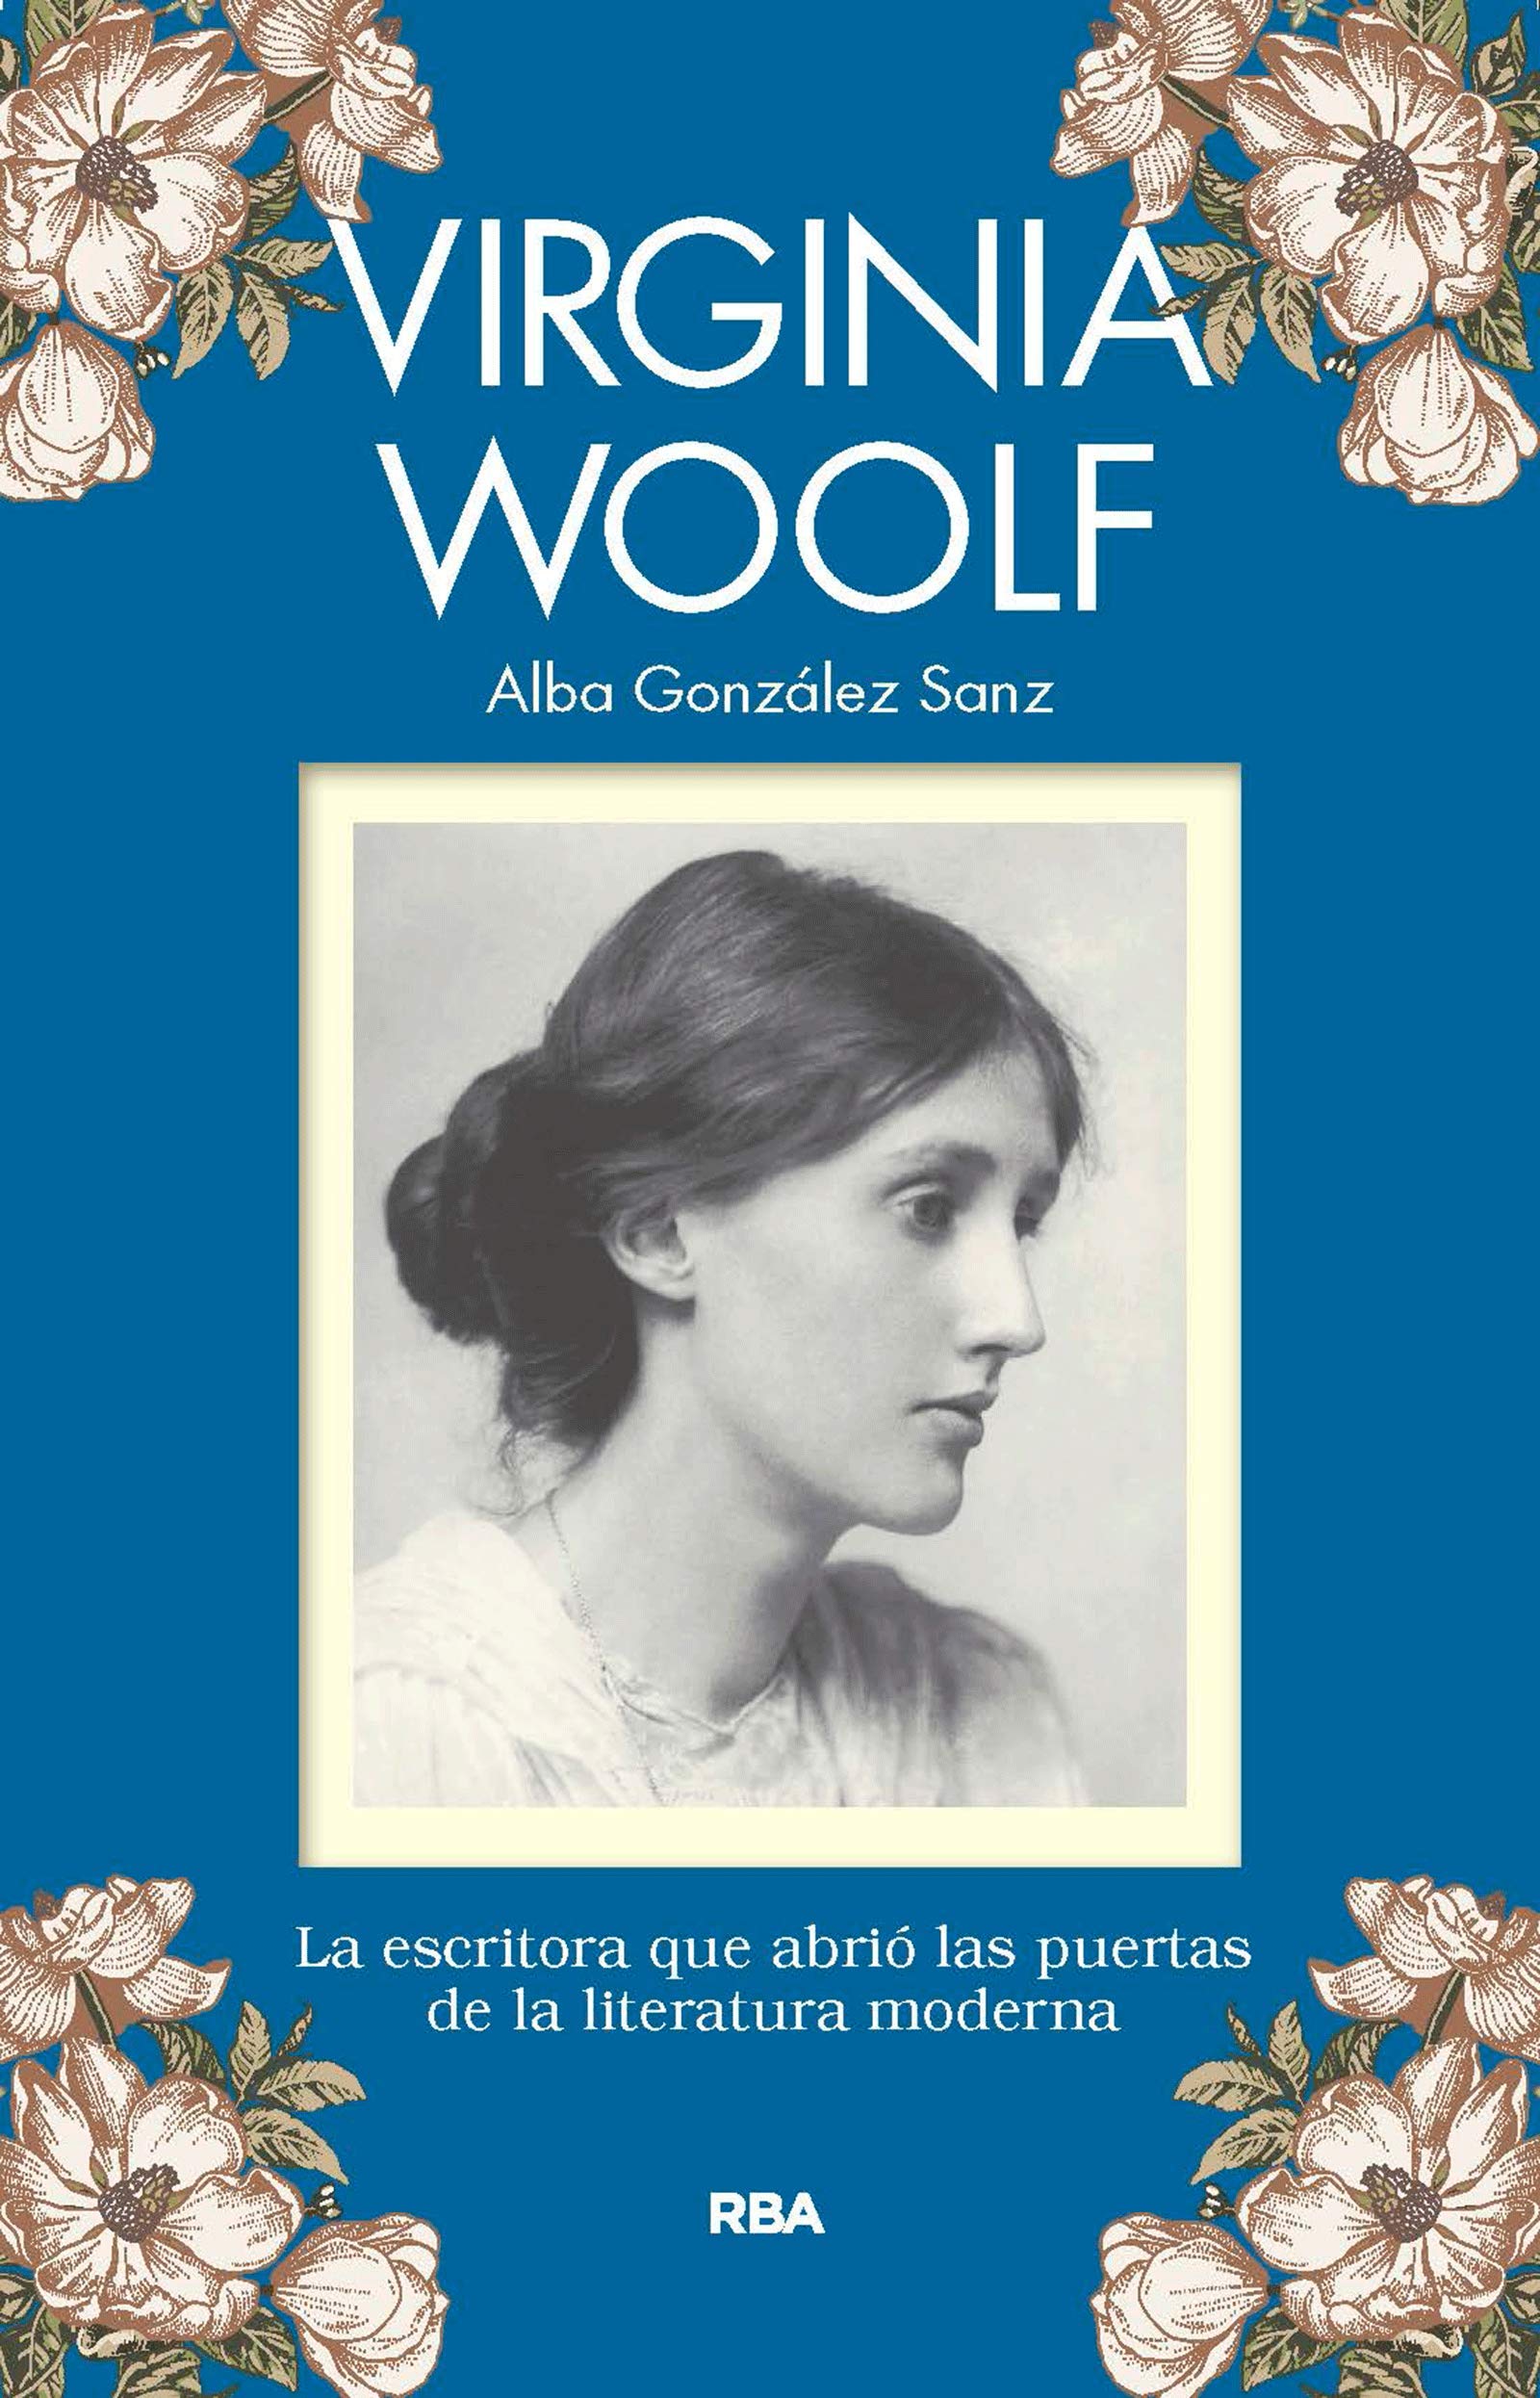 Virginia Woolf, todas las mujeres